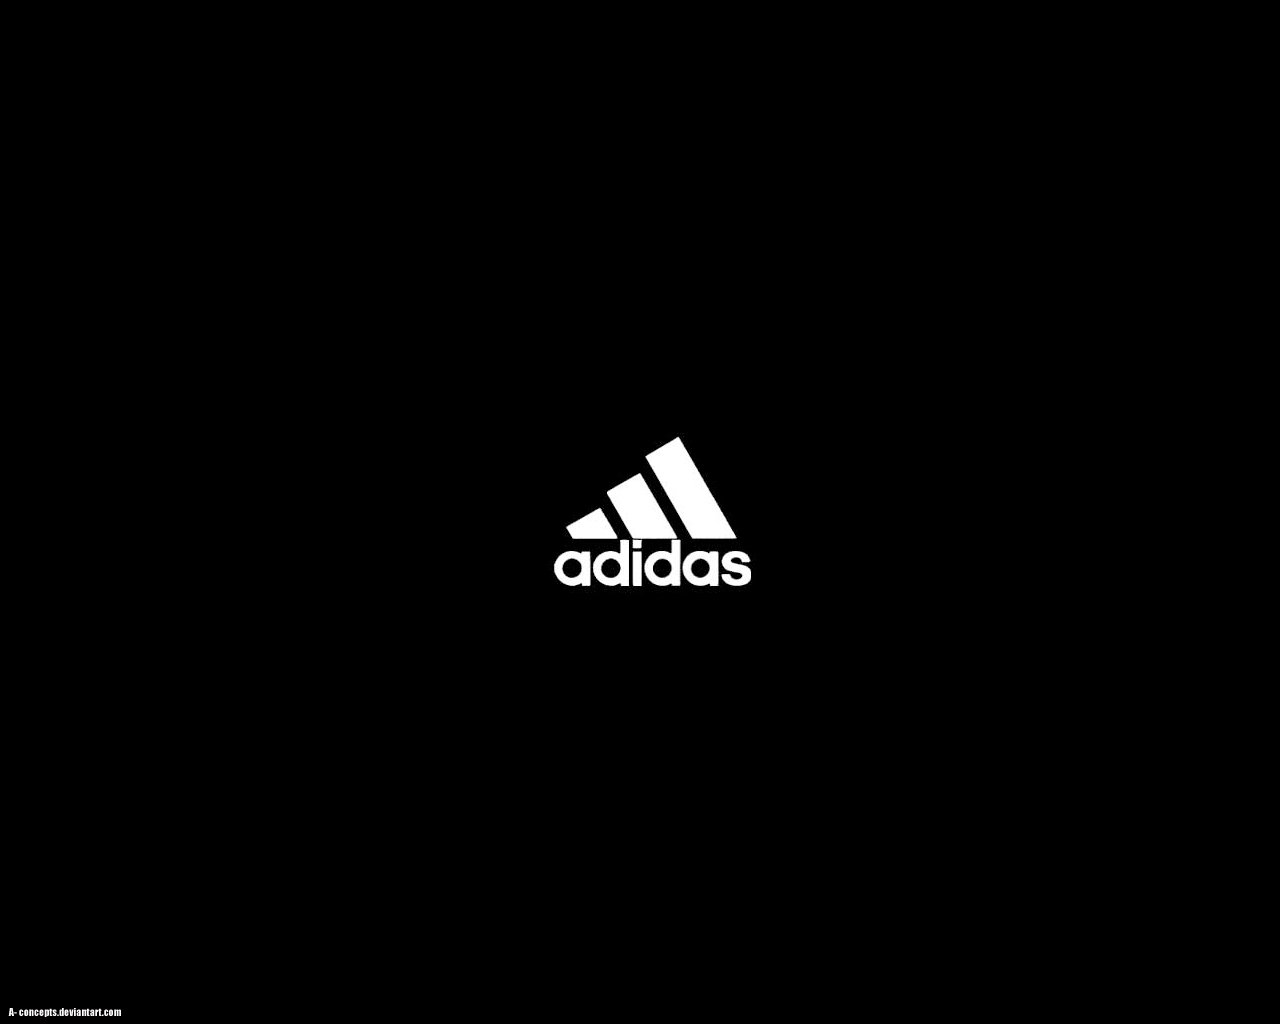 Chiêm ngưỡng nền đen sang trọng và tinh tế của hình nền Adidas đầy bí ẩn. Khám phá chi tiết các đường nét mang tính biểu tượng của logo Adidas được giữ lại và tạo nên khối đen mạnh mẽ. Tất cả tạo nên một hình nền lôi cuốn và phù hợp với mọi phong cách.